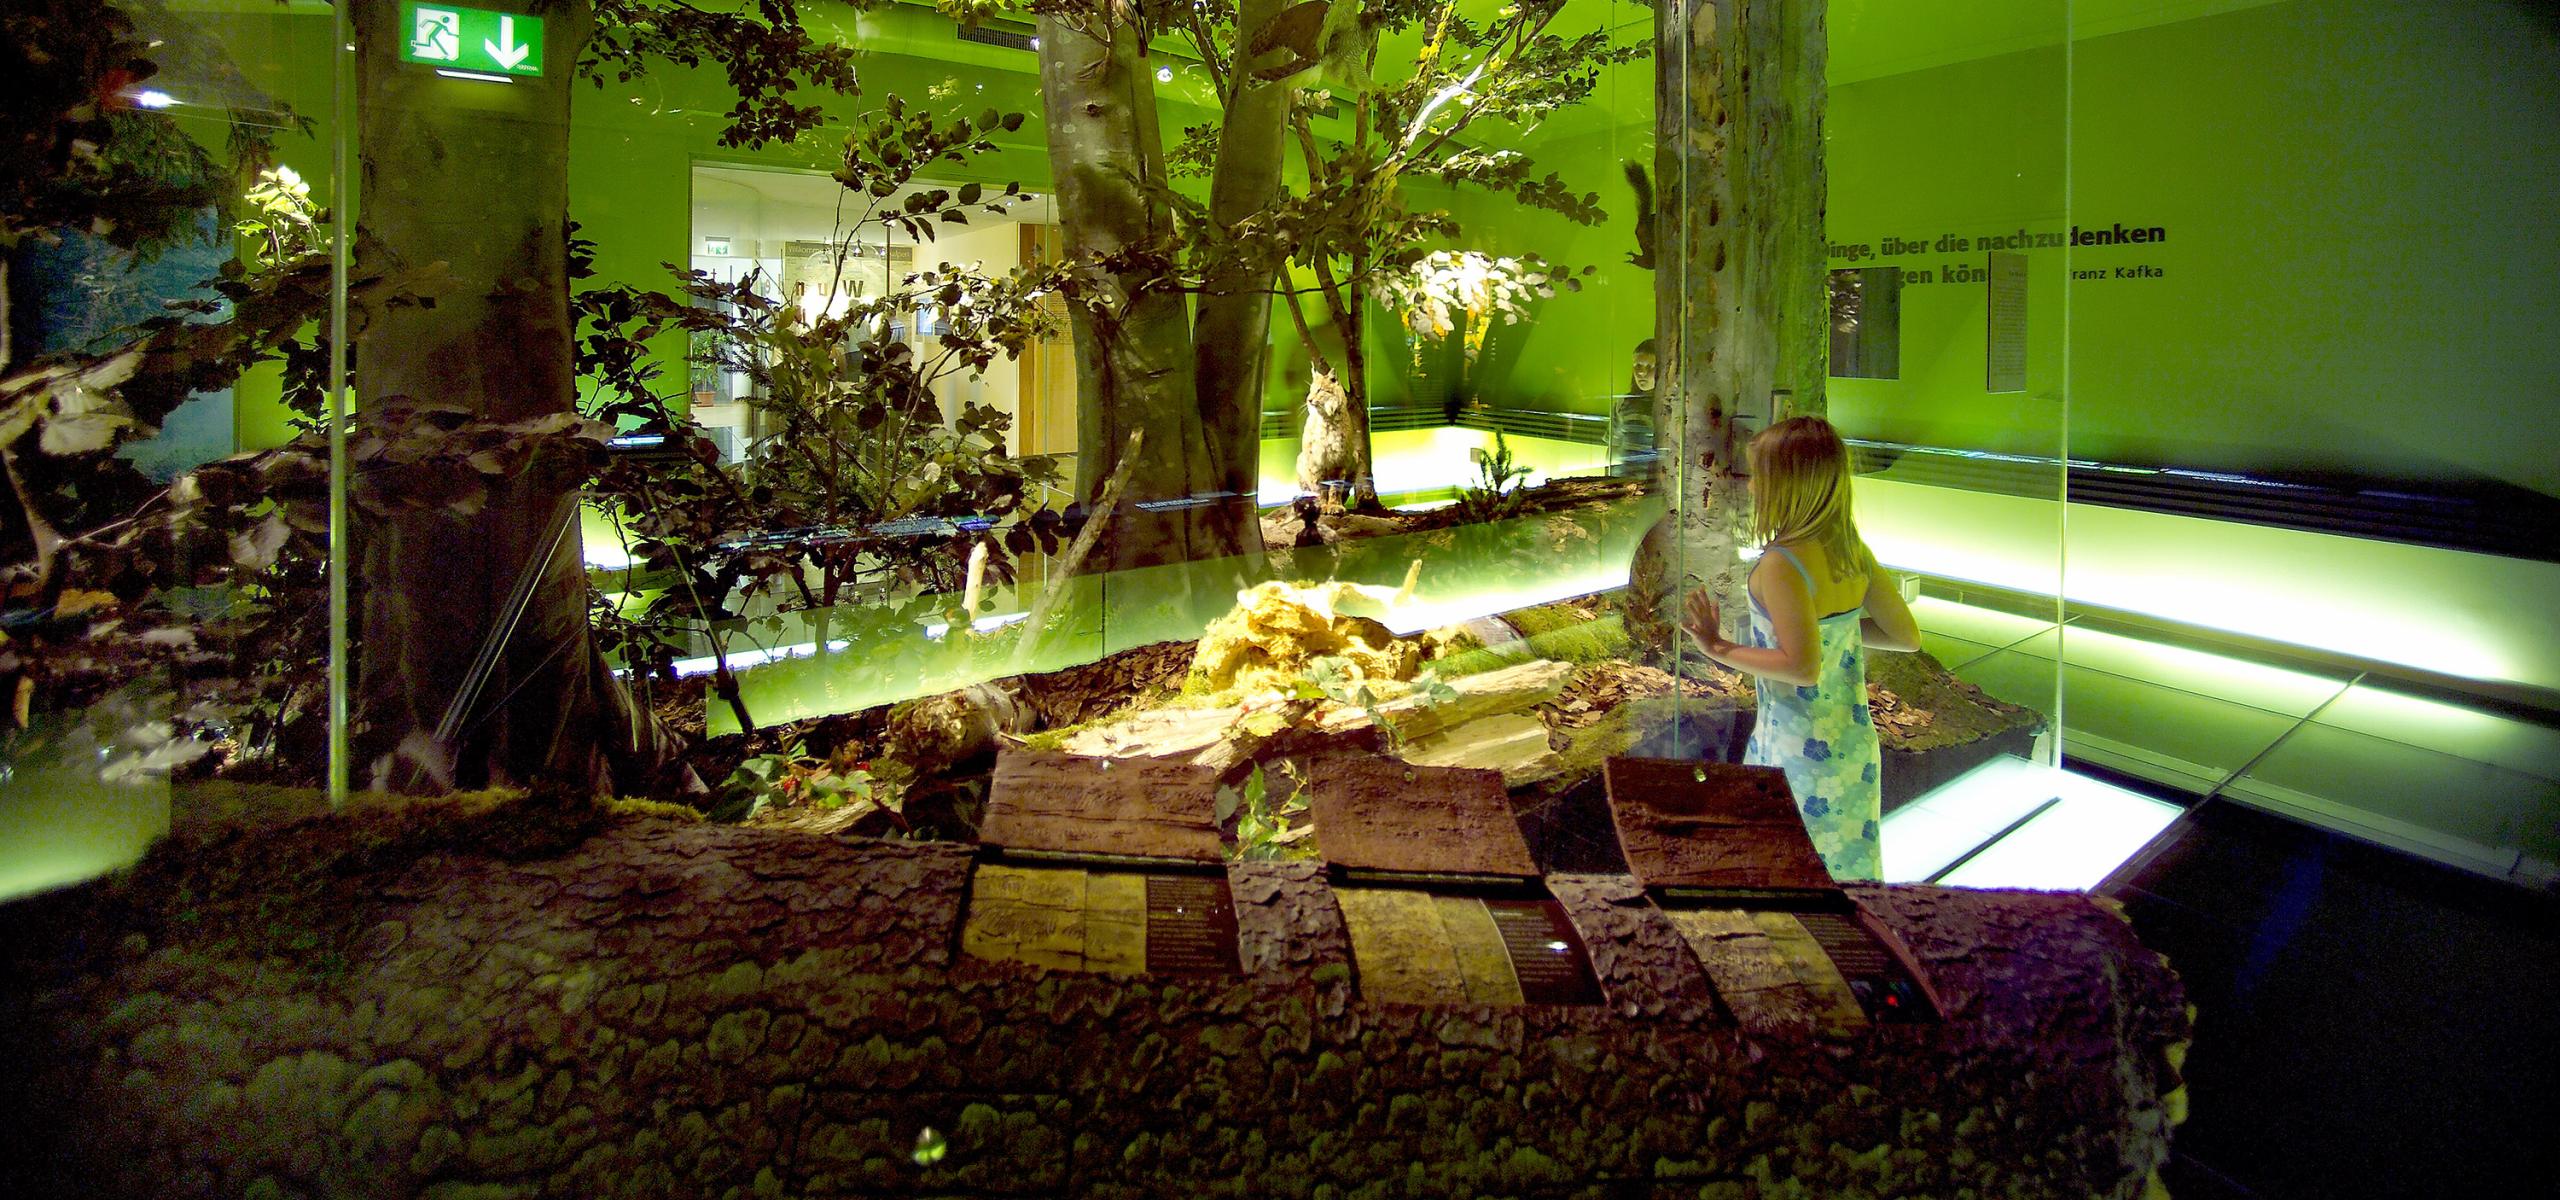 Výstava ukazuje lesní divočinu s jejími obyvateli